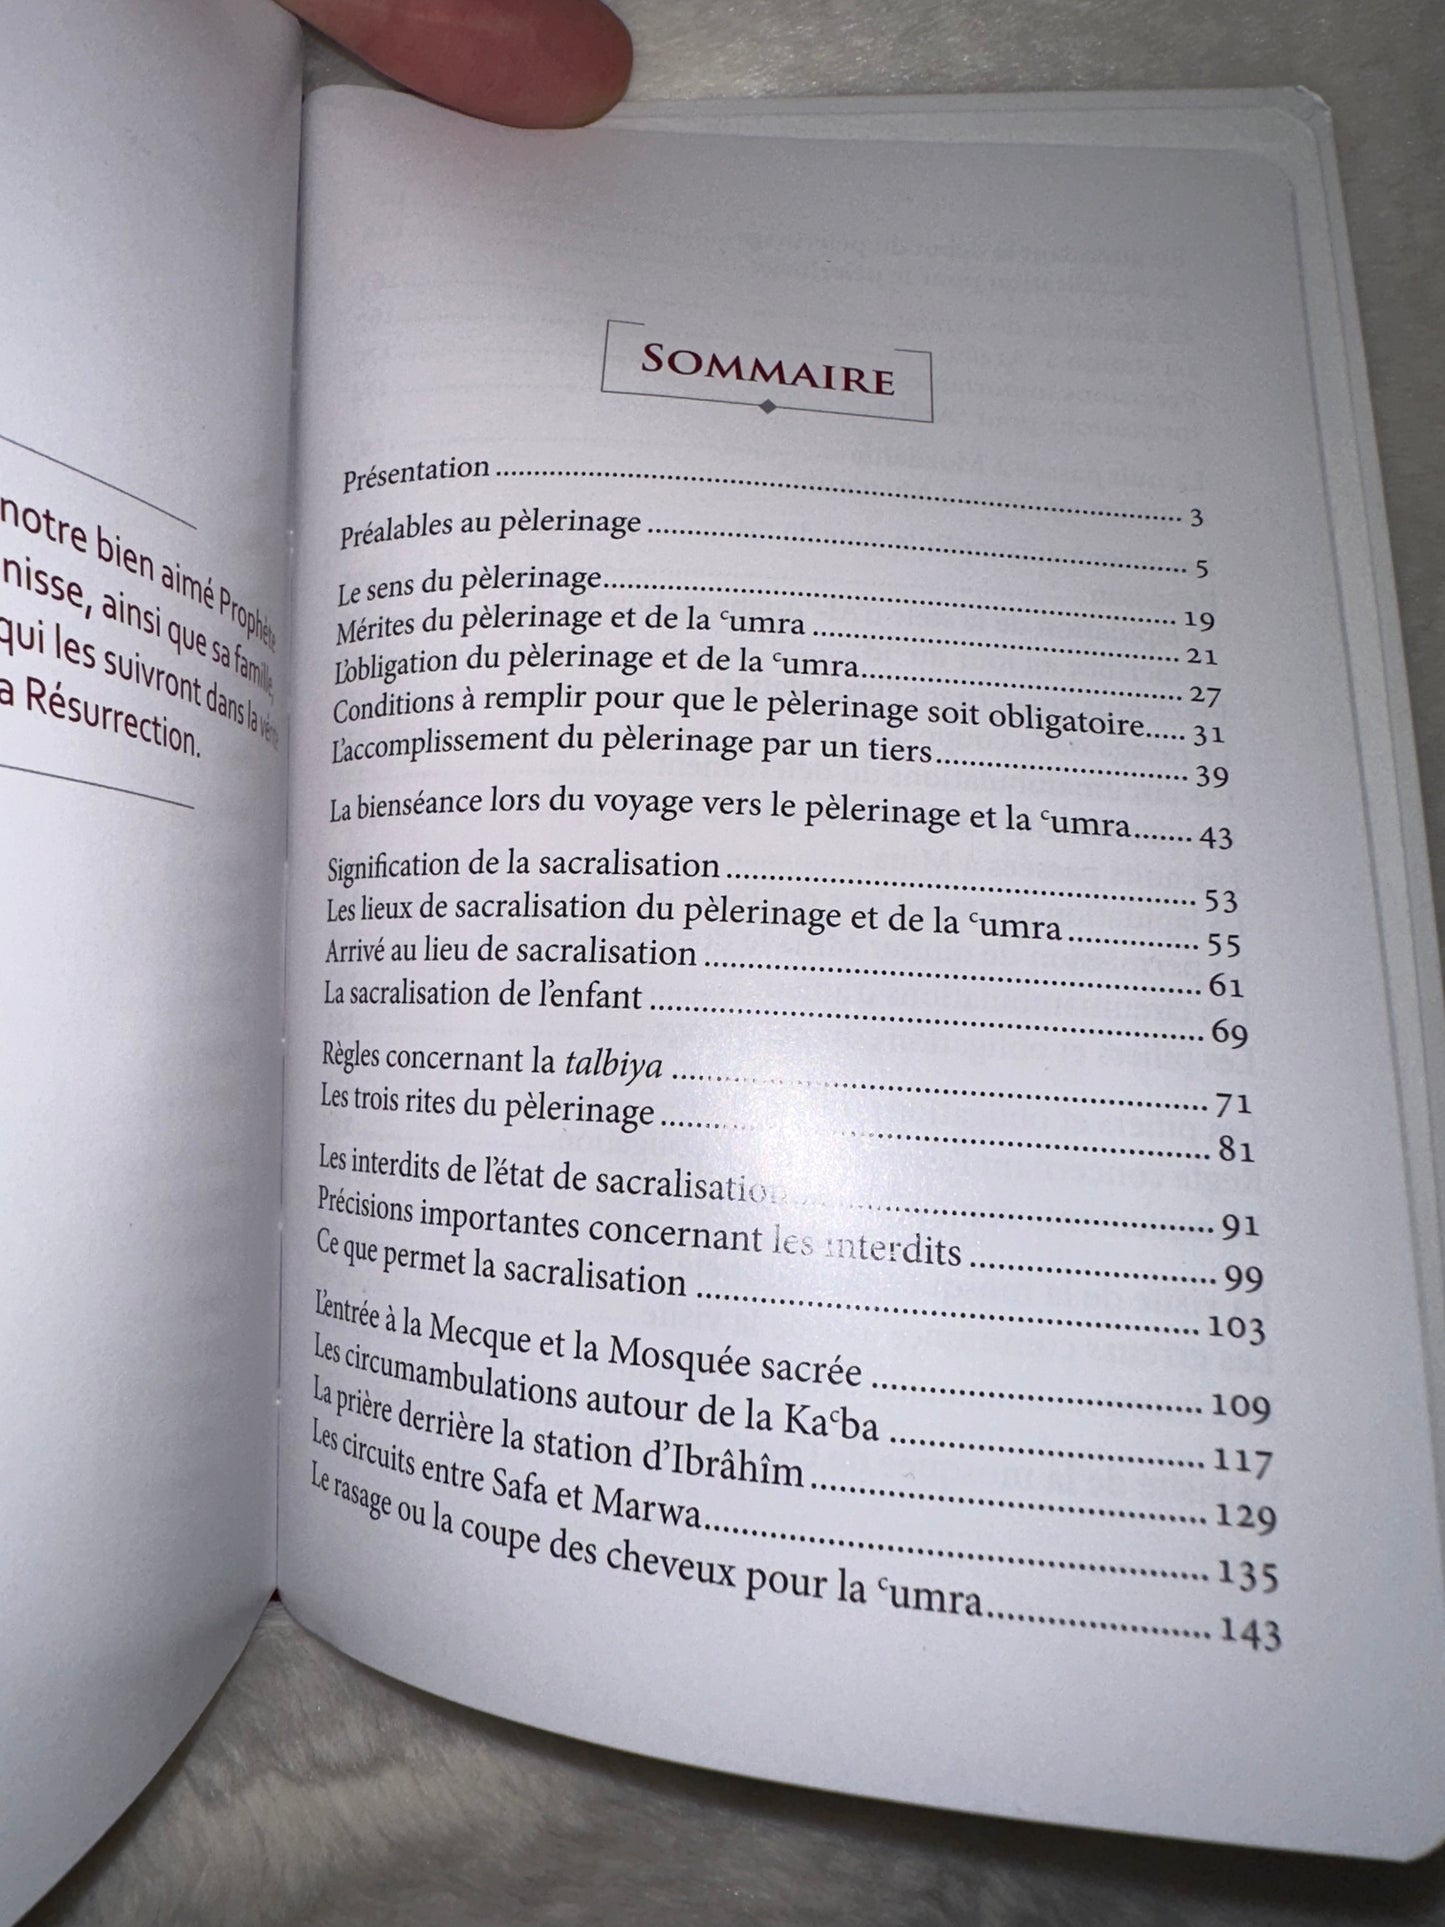 Le Guide du pèlerin pour tout savoir sur le pèlerinage (Hajj) et la 'Umra, conseils pratiques, et astuces